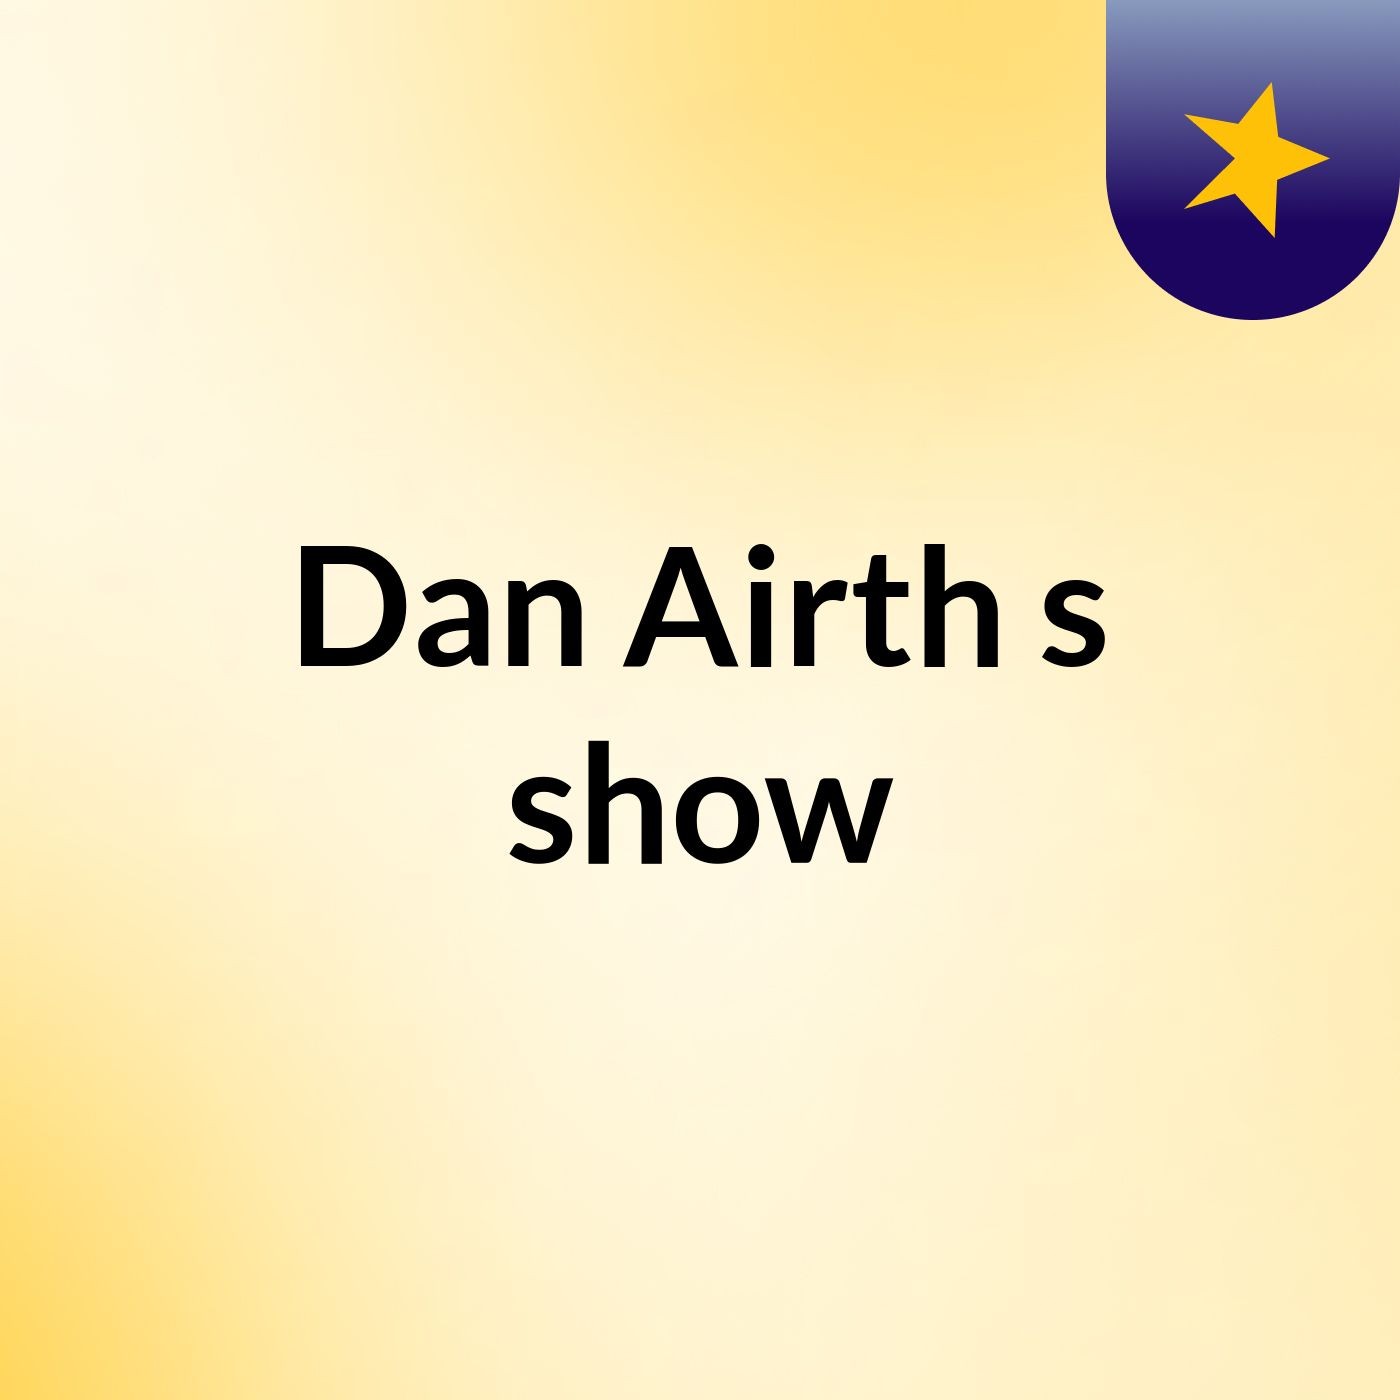 Dan Airth's show